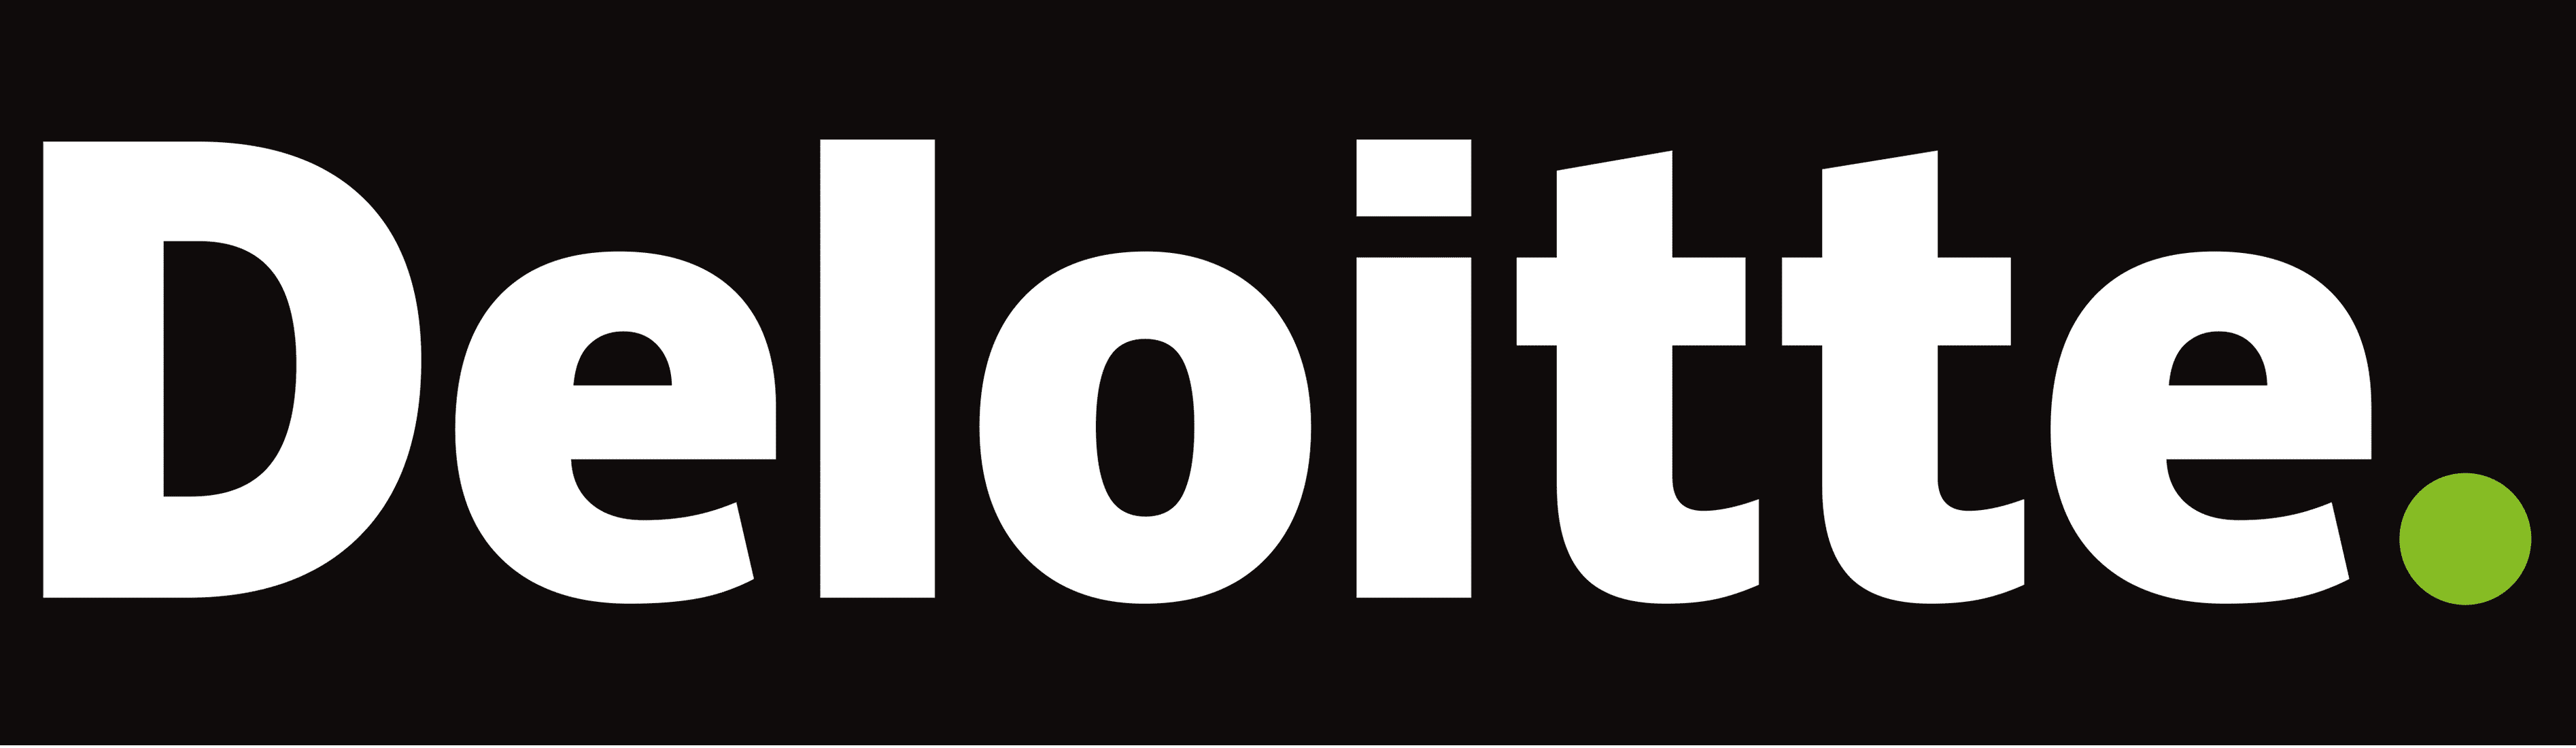 Deloitte logo min